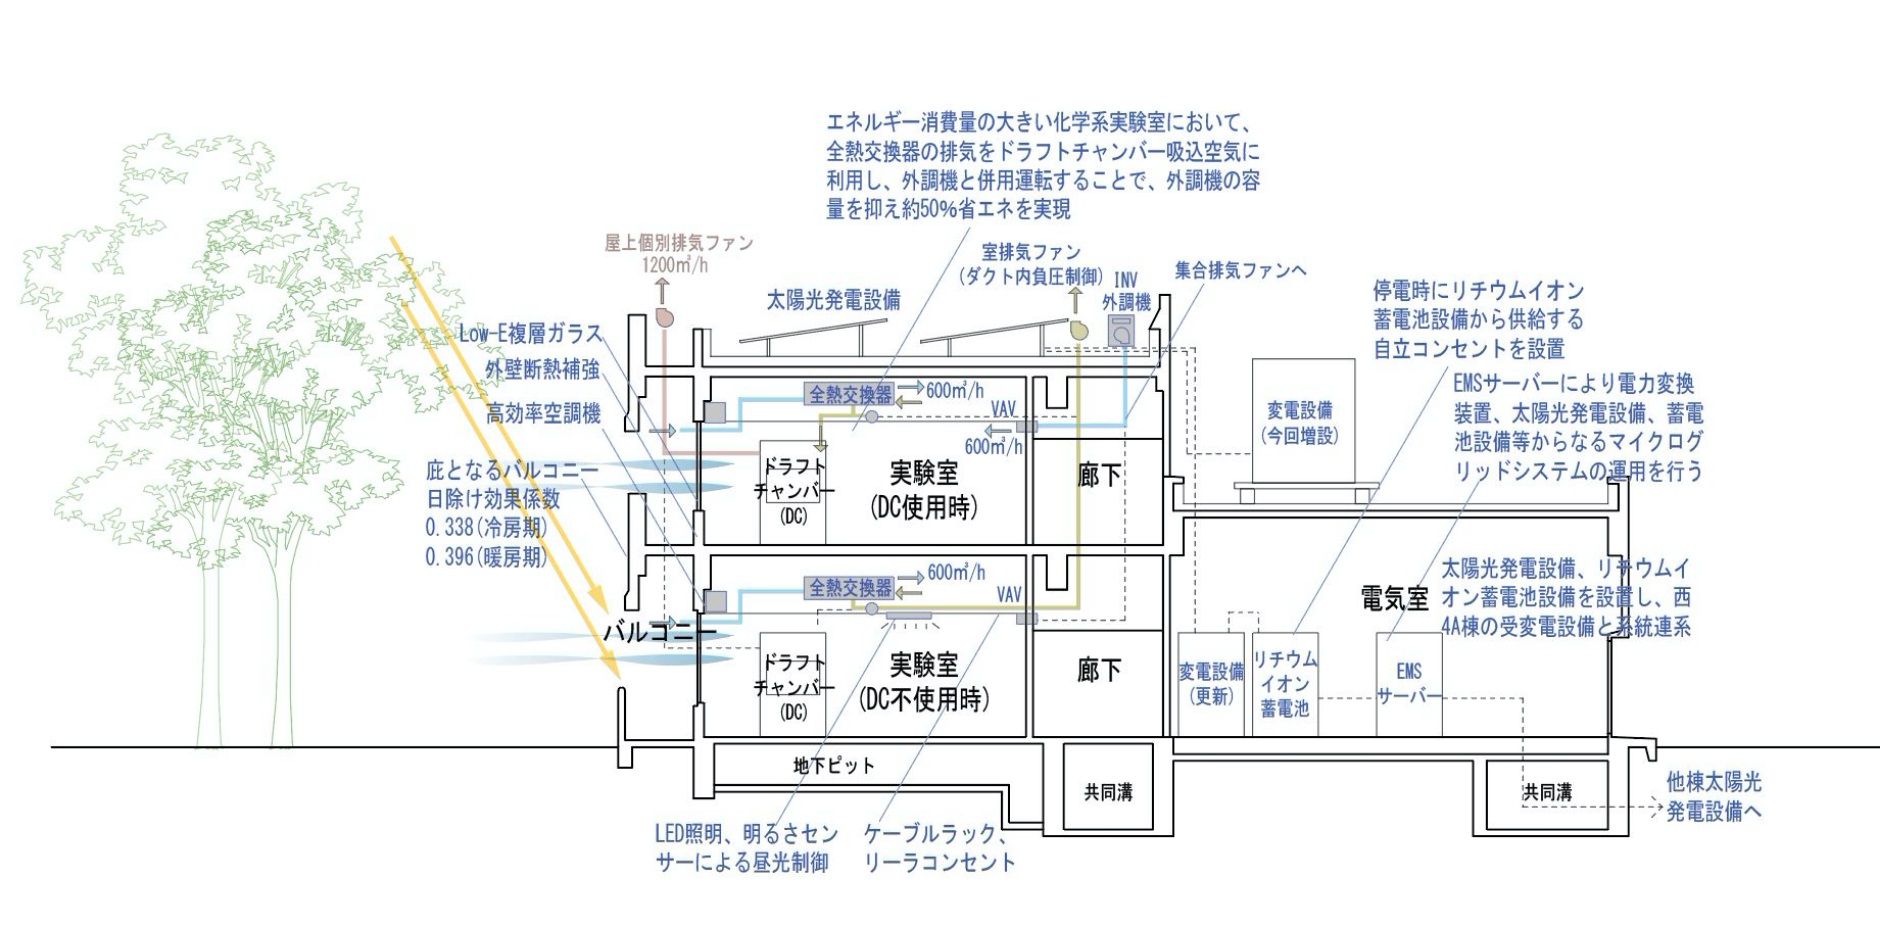 西-4A棟断面図（青字は採用したNet Zeroリノベーション技術を示す）